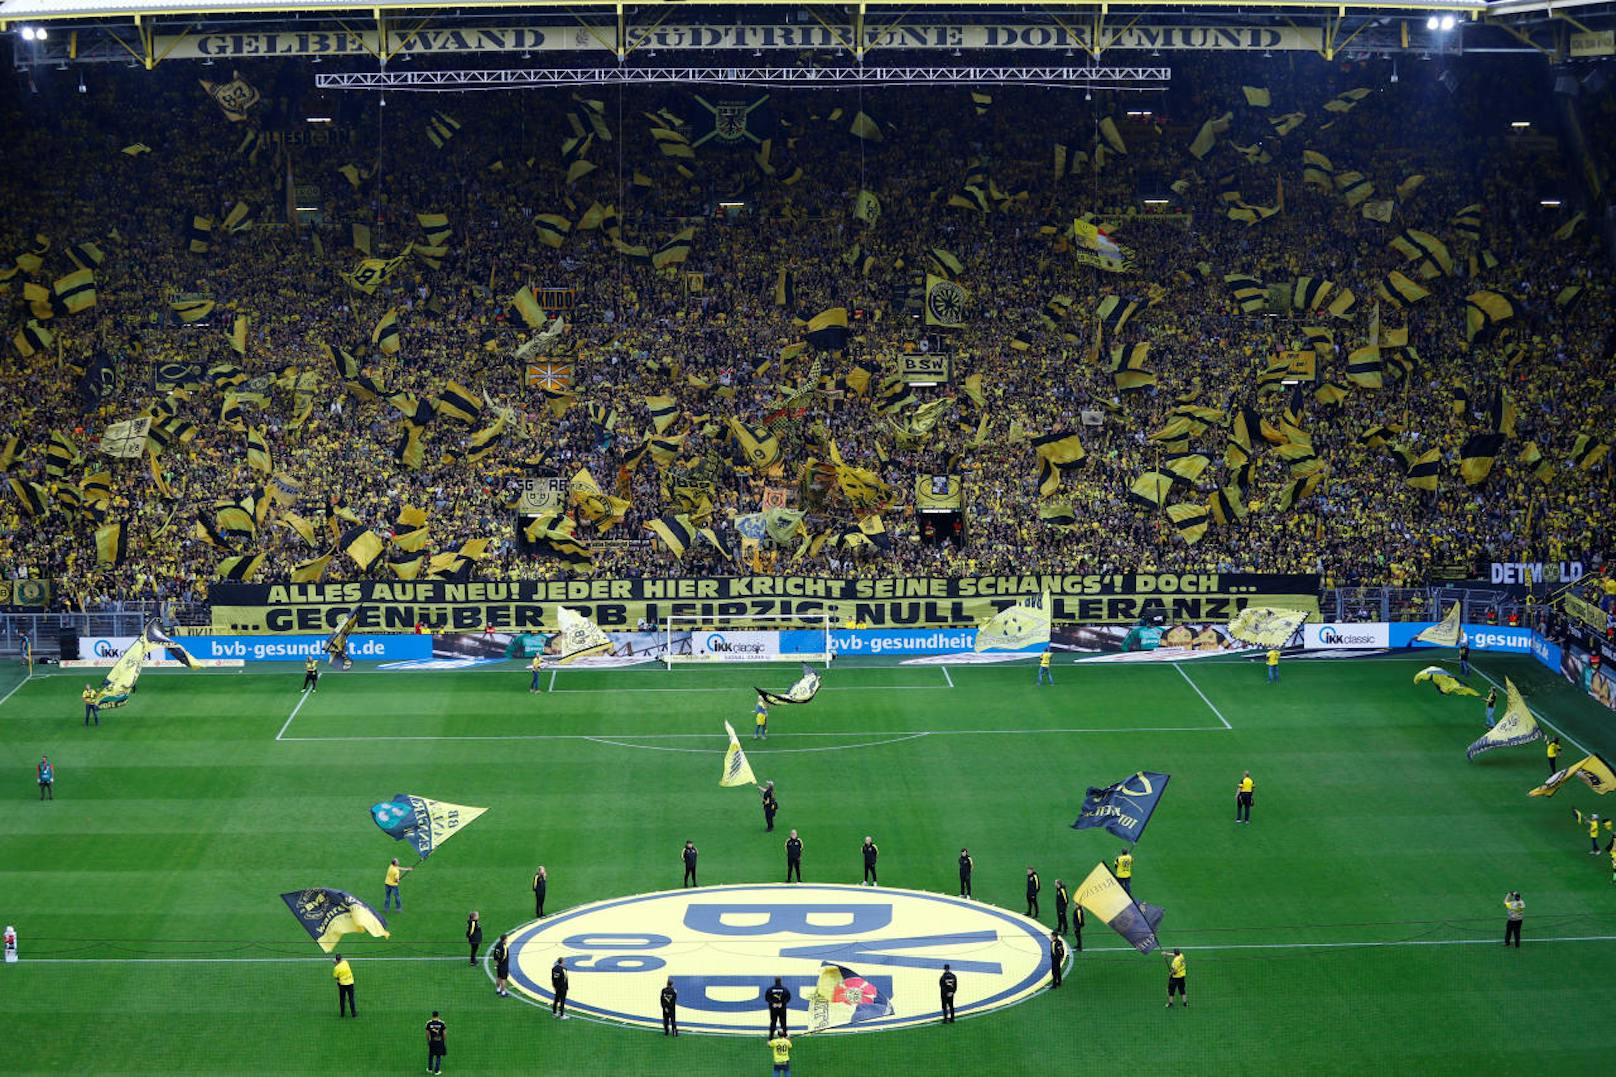 Für viele Fußball-Fans ein Highlight: Der Signal-Iduna-Park von Dortmund. Nicht weniger als 81.000 Zuschauer passen in die gigantische BVB-Heimstätte.